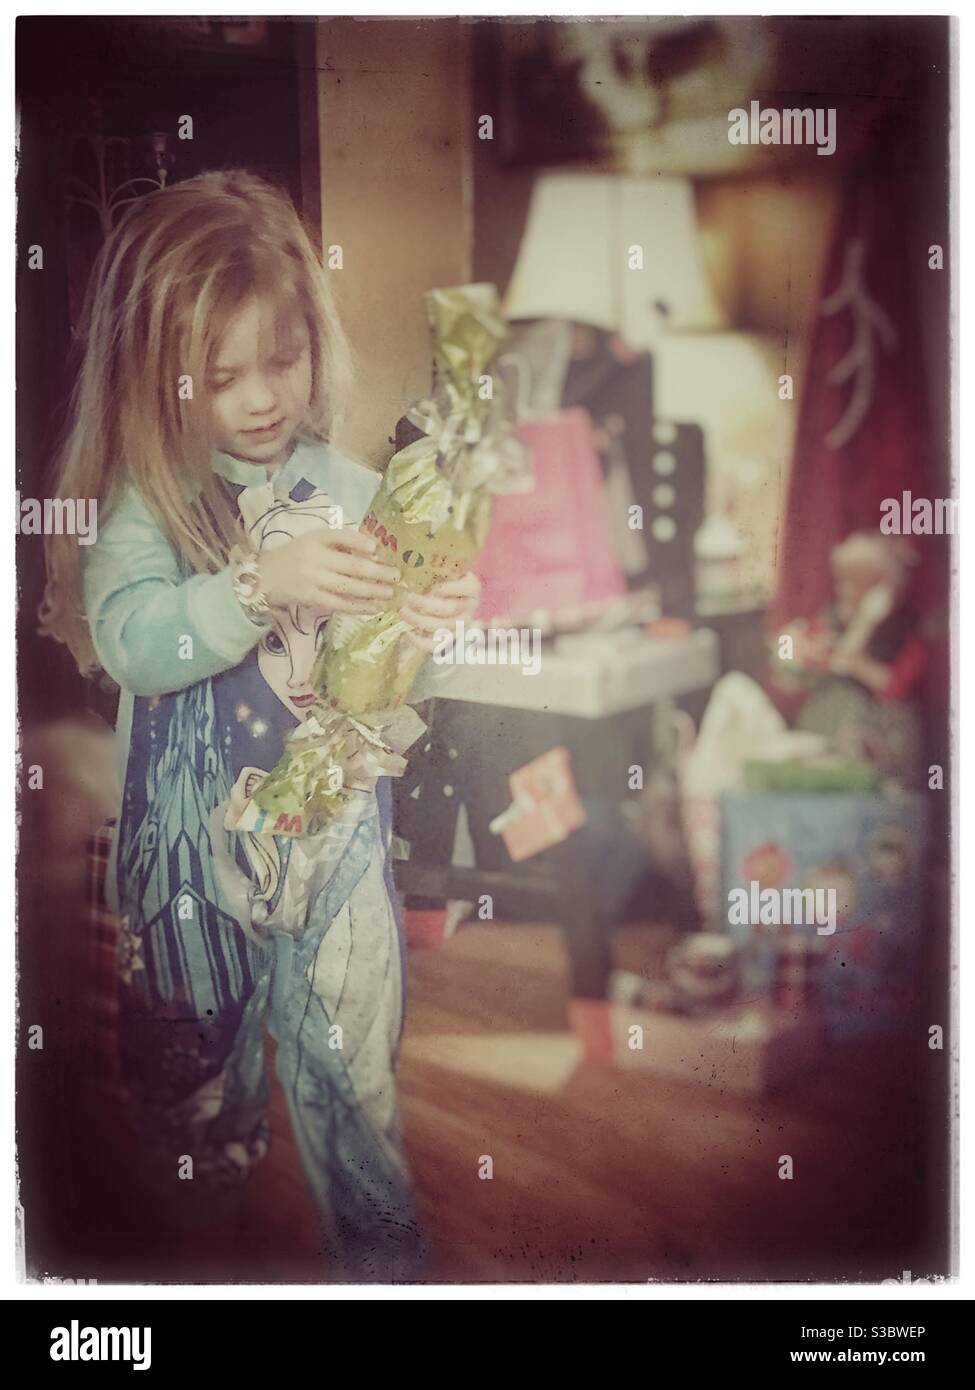 Niña que lleva pijama de Elsa congelado abriendo un regalo de Navidad Foto de stock